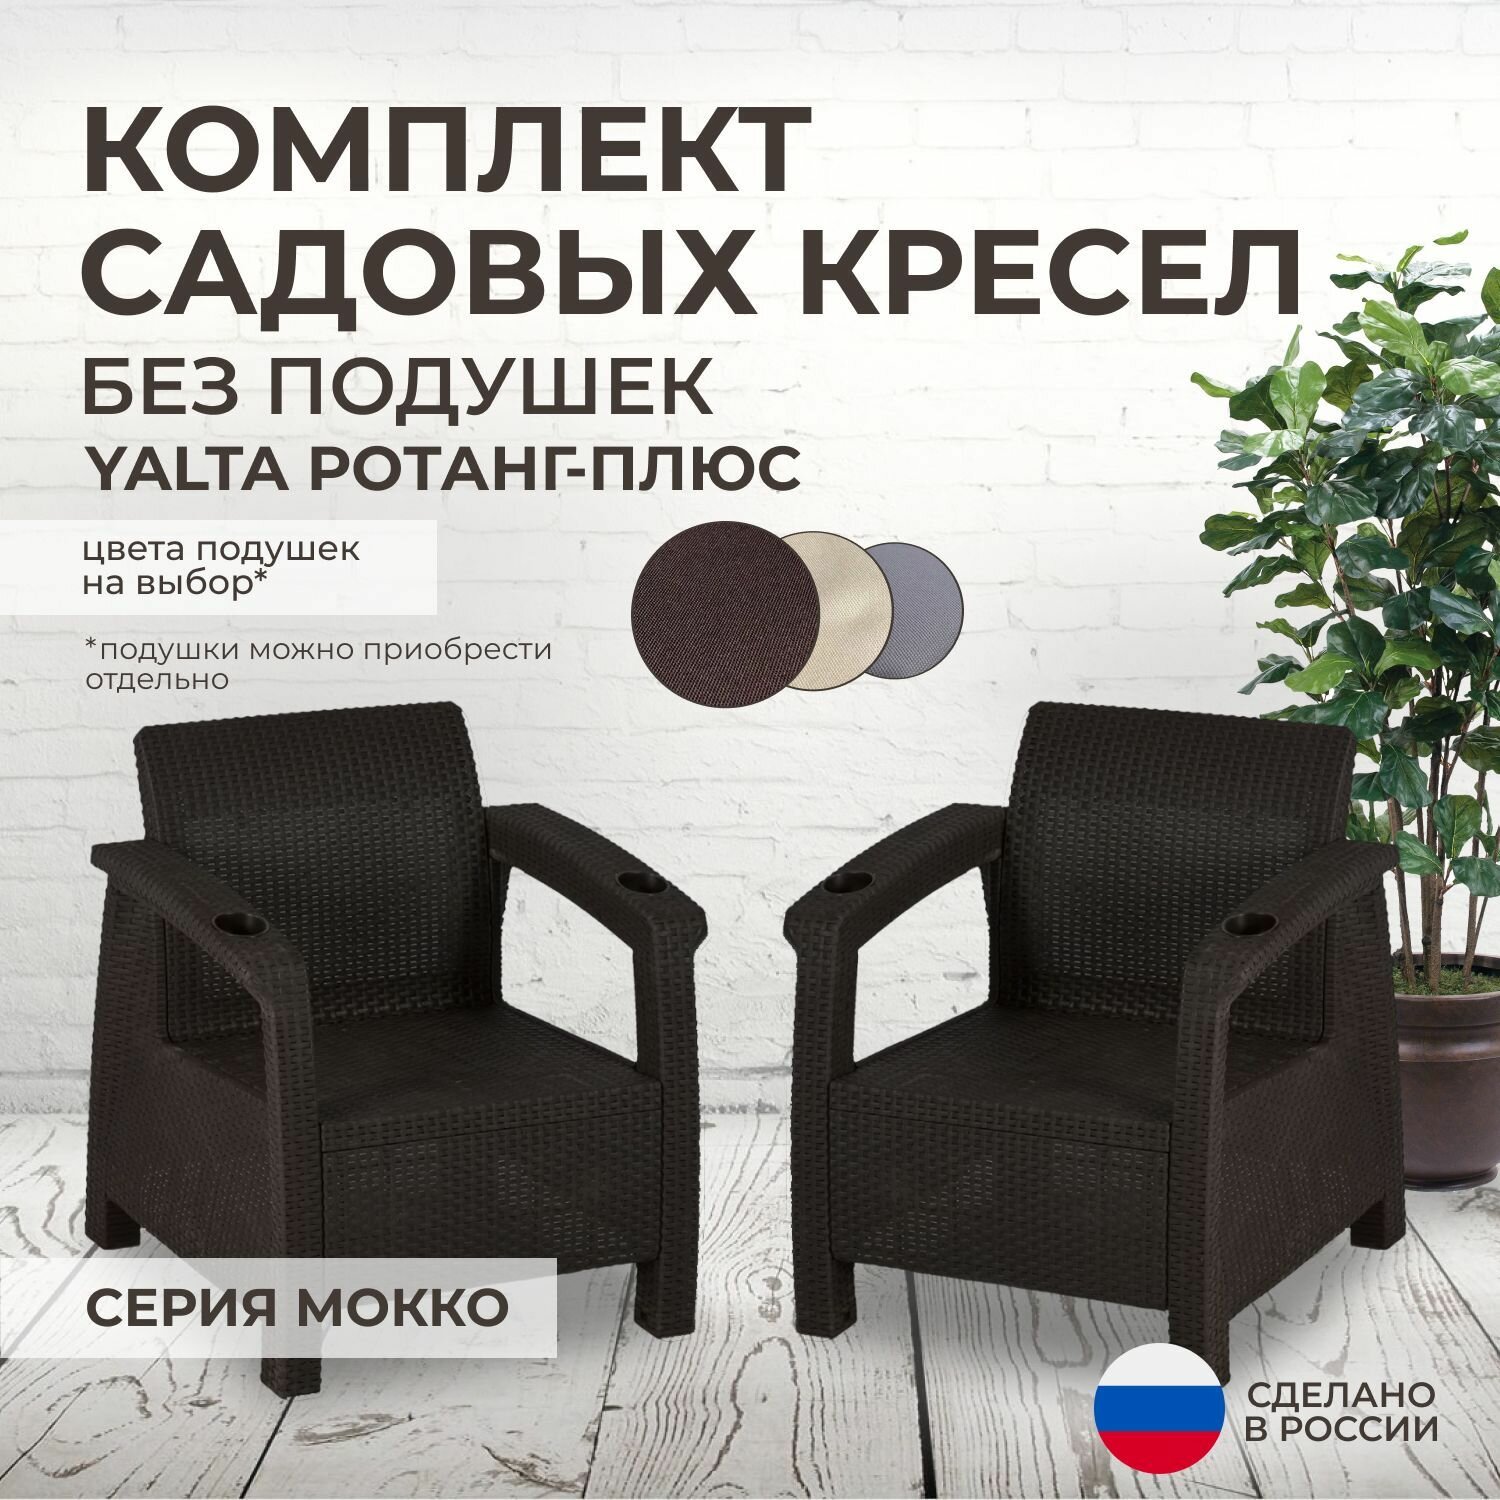 Кресла садовые 2шт. YALTA (Ялта Ротанг-плюс) - без подушек (искусственный ротанг (пластик)